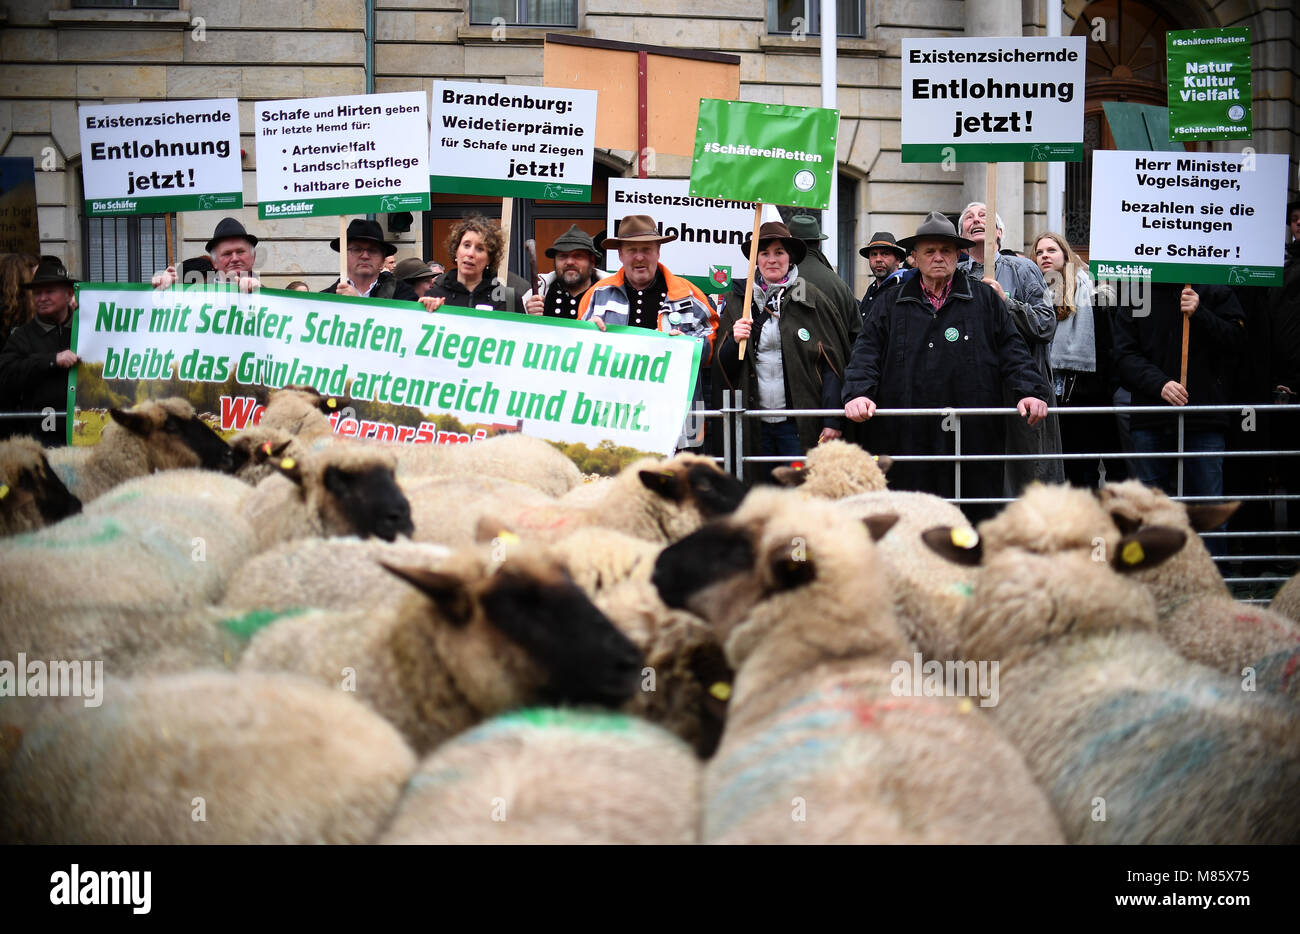 13 marzo 2018, Germania Berlino: Pastori protesta per la conservazione della loro professione con un pascolo' bonus al di fuori del ministero tedesco dei prodotti alimentari e dell'agricoltura. Essi portano un banner di lettura "NUR MIT SCHAEFER, SCHAFEN ZIEGEN UND HUND BLEIBT DAS GRUENLAND ARTENREICH UND BUNT' (lit. Solo con pastori, pecore, goands e cani della prateria soggiorni ricchi di specie e colorati) e ulteriori indicazioni. Foto: Britta Pedersen/dpa-Zentralbild/ZB Foto Stock